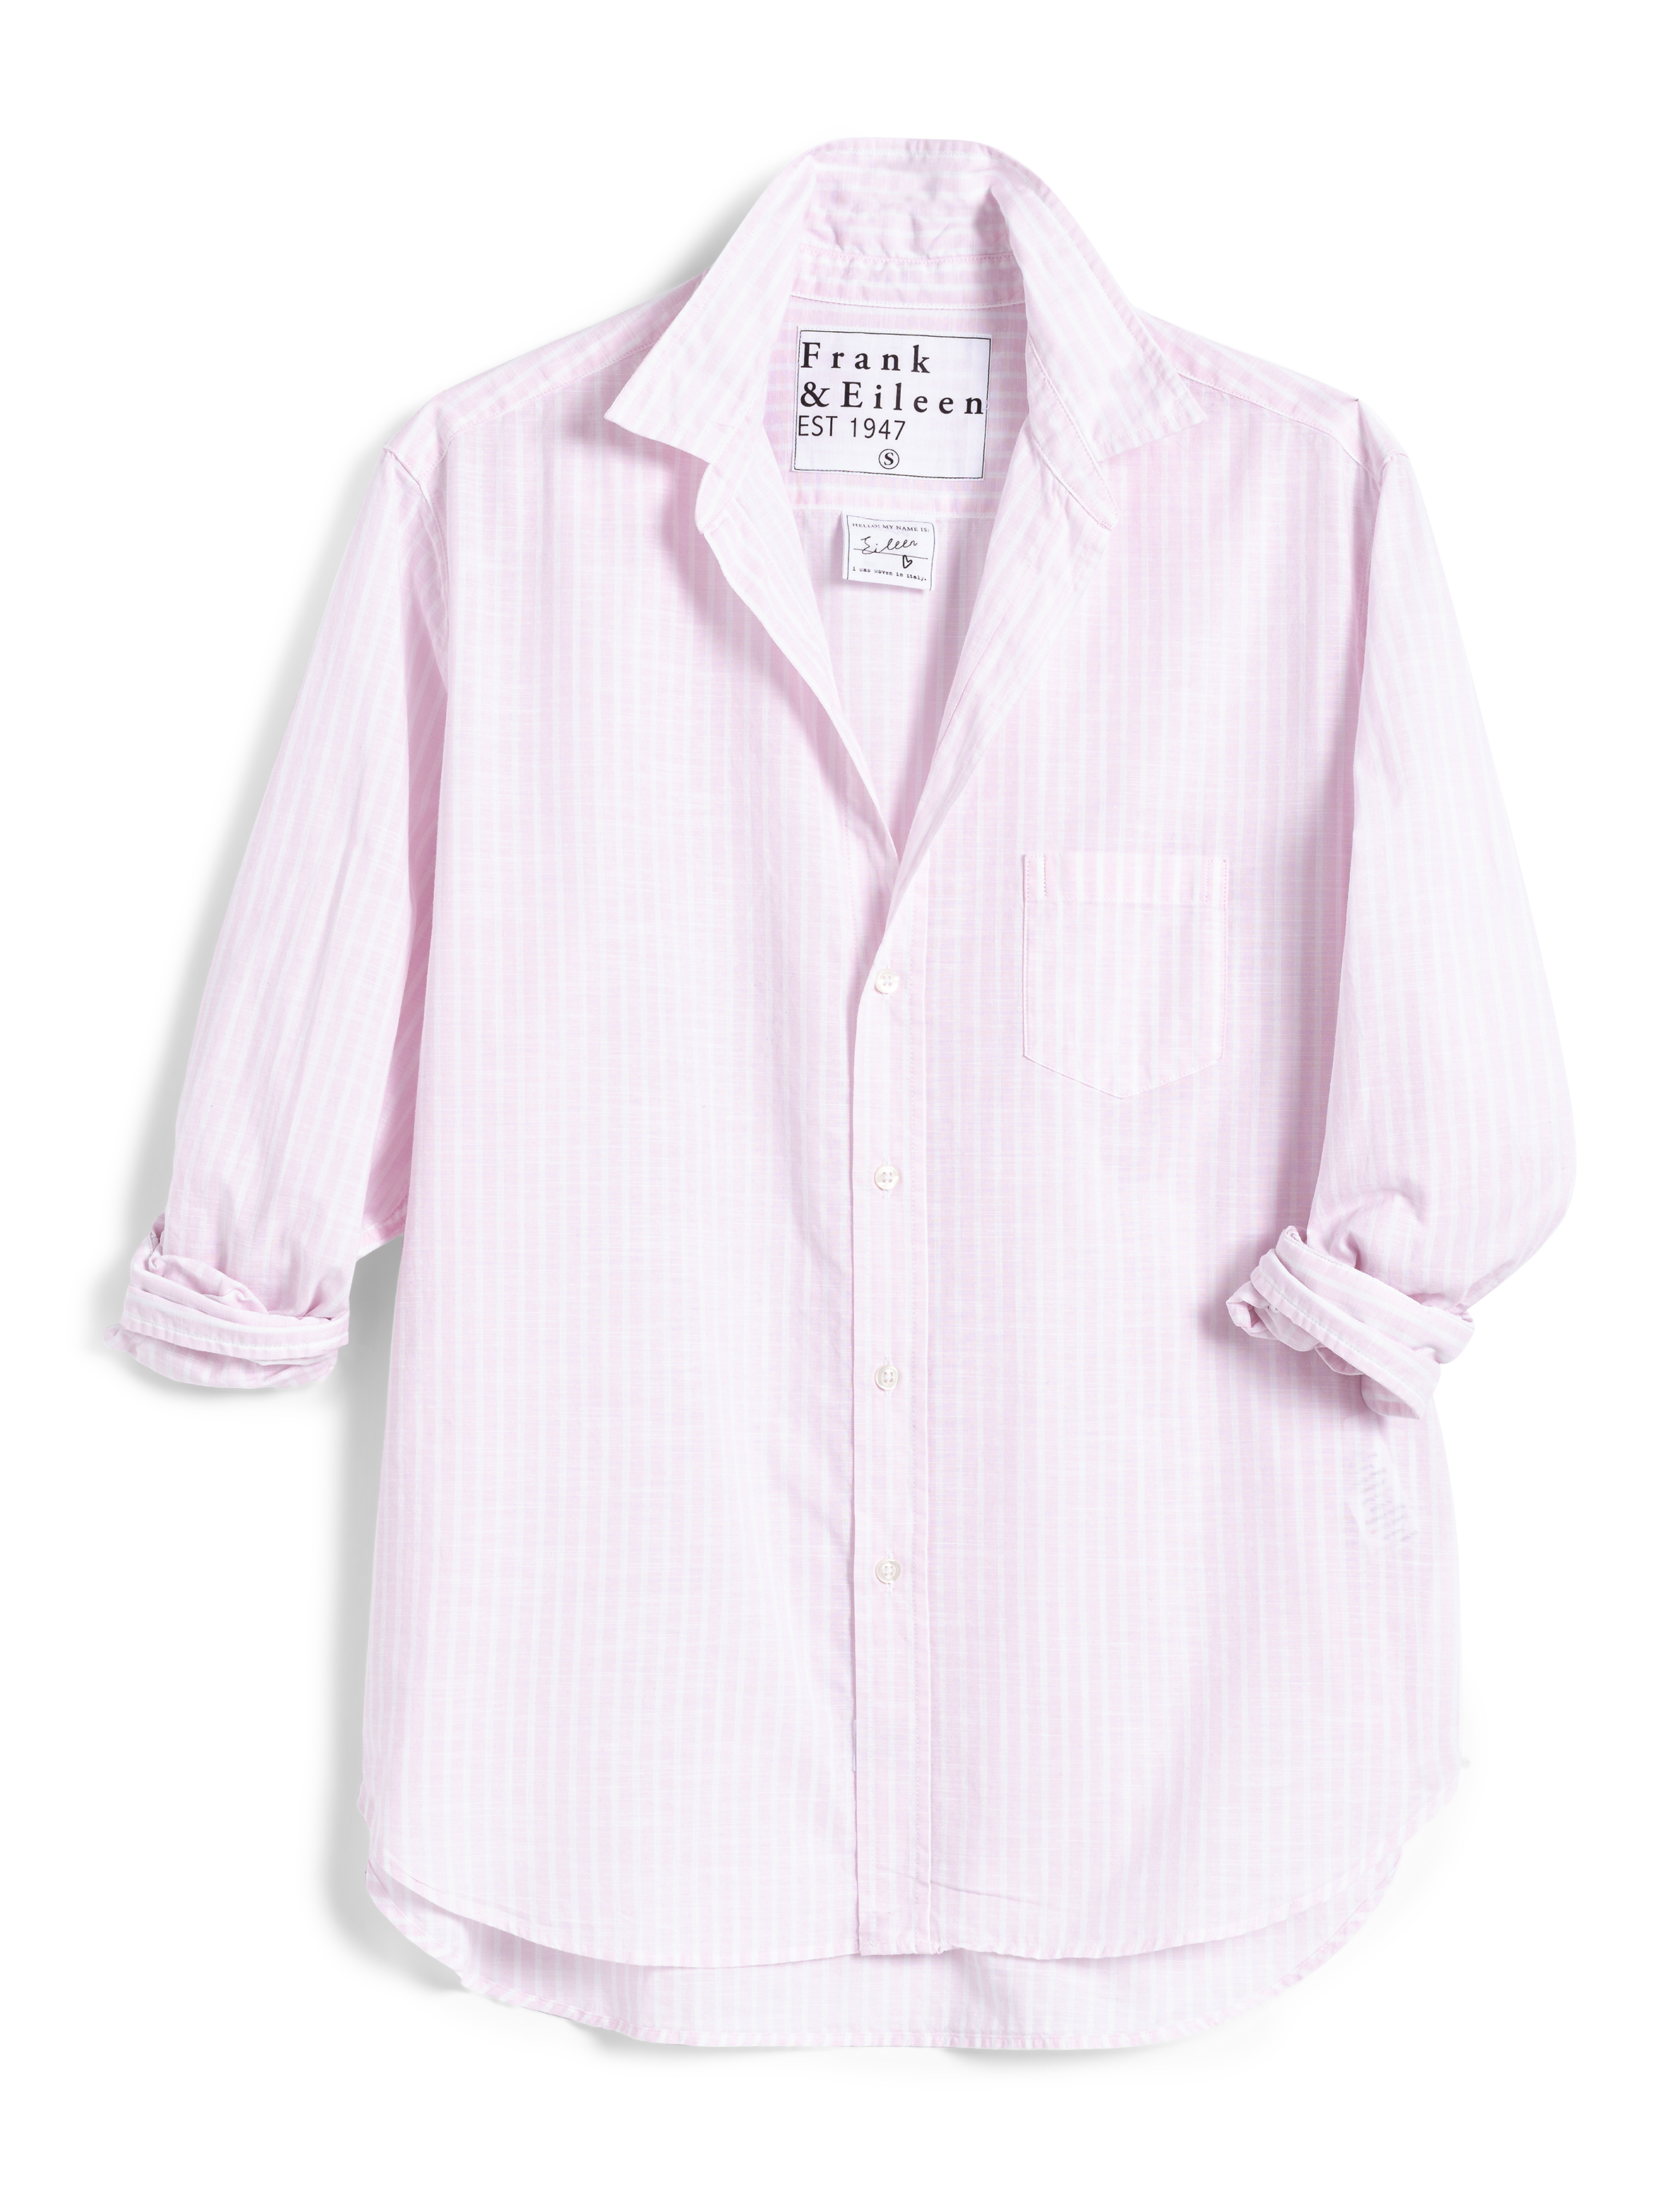 Frank & Eileen - Eileen Woven Button Up in Soft Pink, White Stripe – Blond  Genius